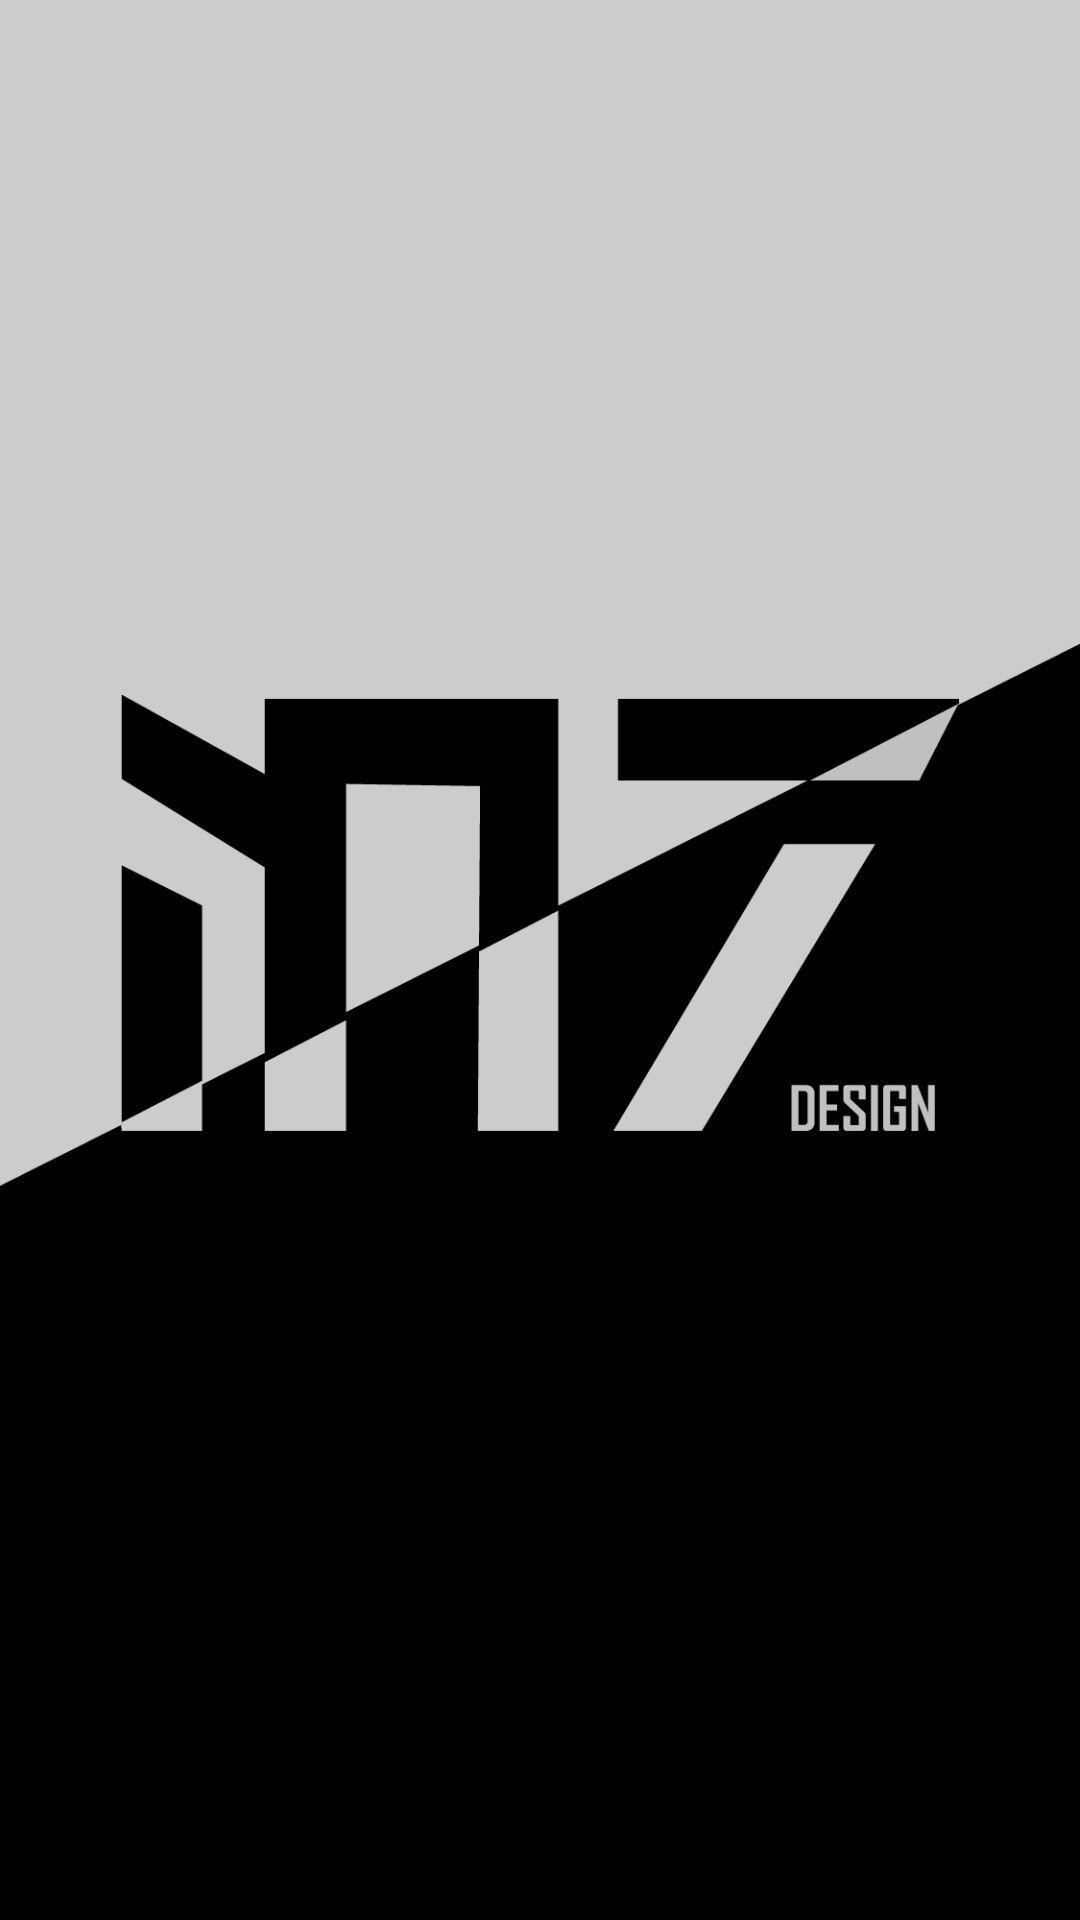 M7 Logo - Latest M7 Design logo | M7 Design | Logos design, Company logo, Logos